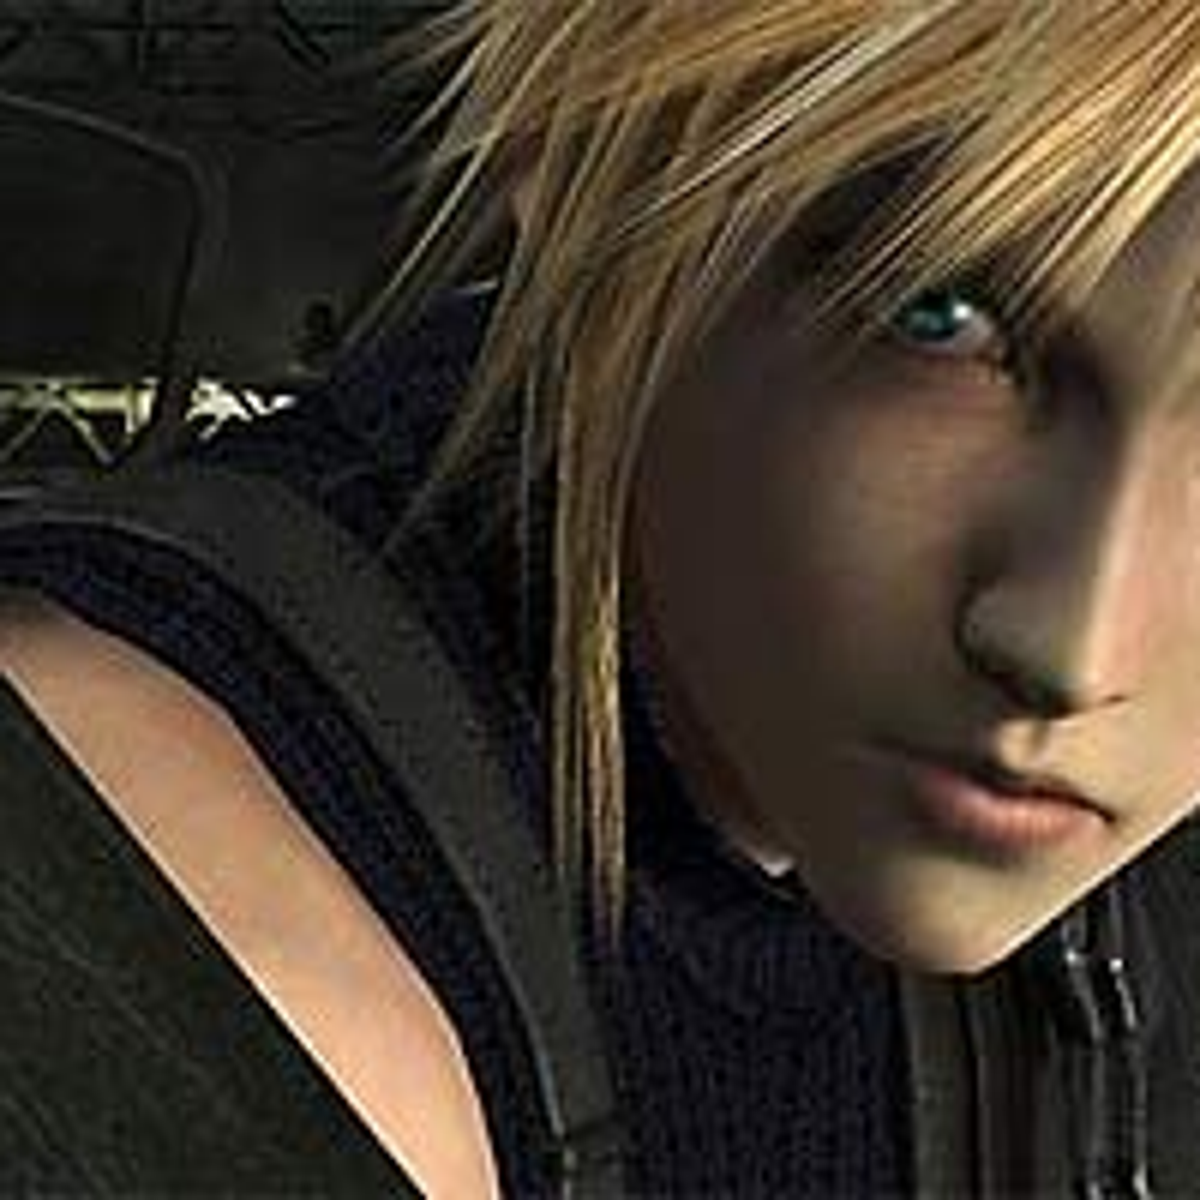 Temporizador Mala fe Sureste Final Fantasy VII downloaded over 100,000 times on PSN | VG247